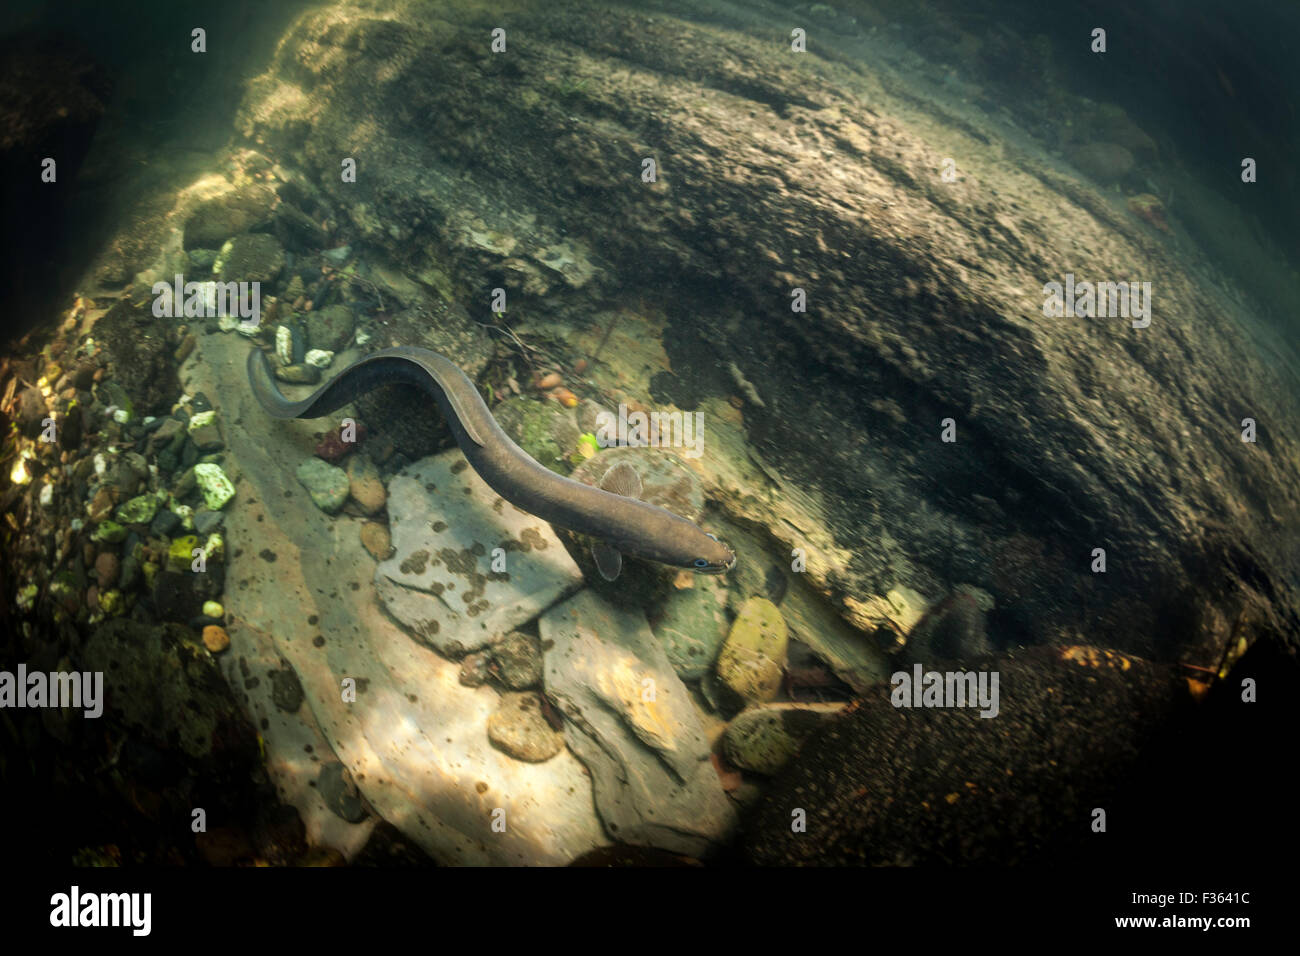 Une rivière anguille (Anguilla anguilla) nager dans la rivière Nivelle (France). Anguille commune nageant dans la Nivelle (France). Banque D'Images